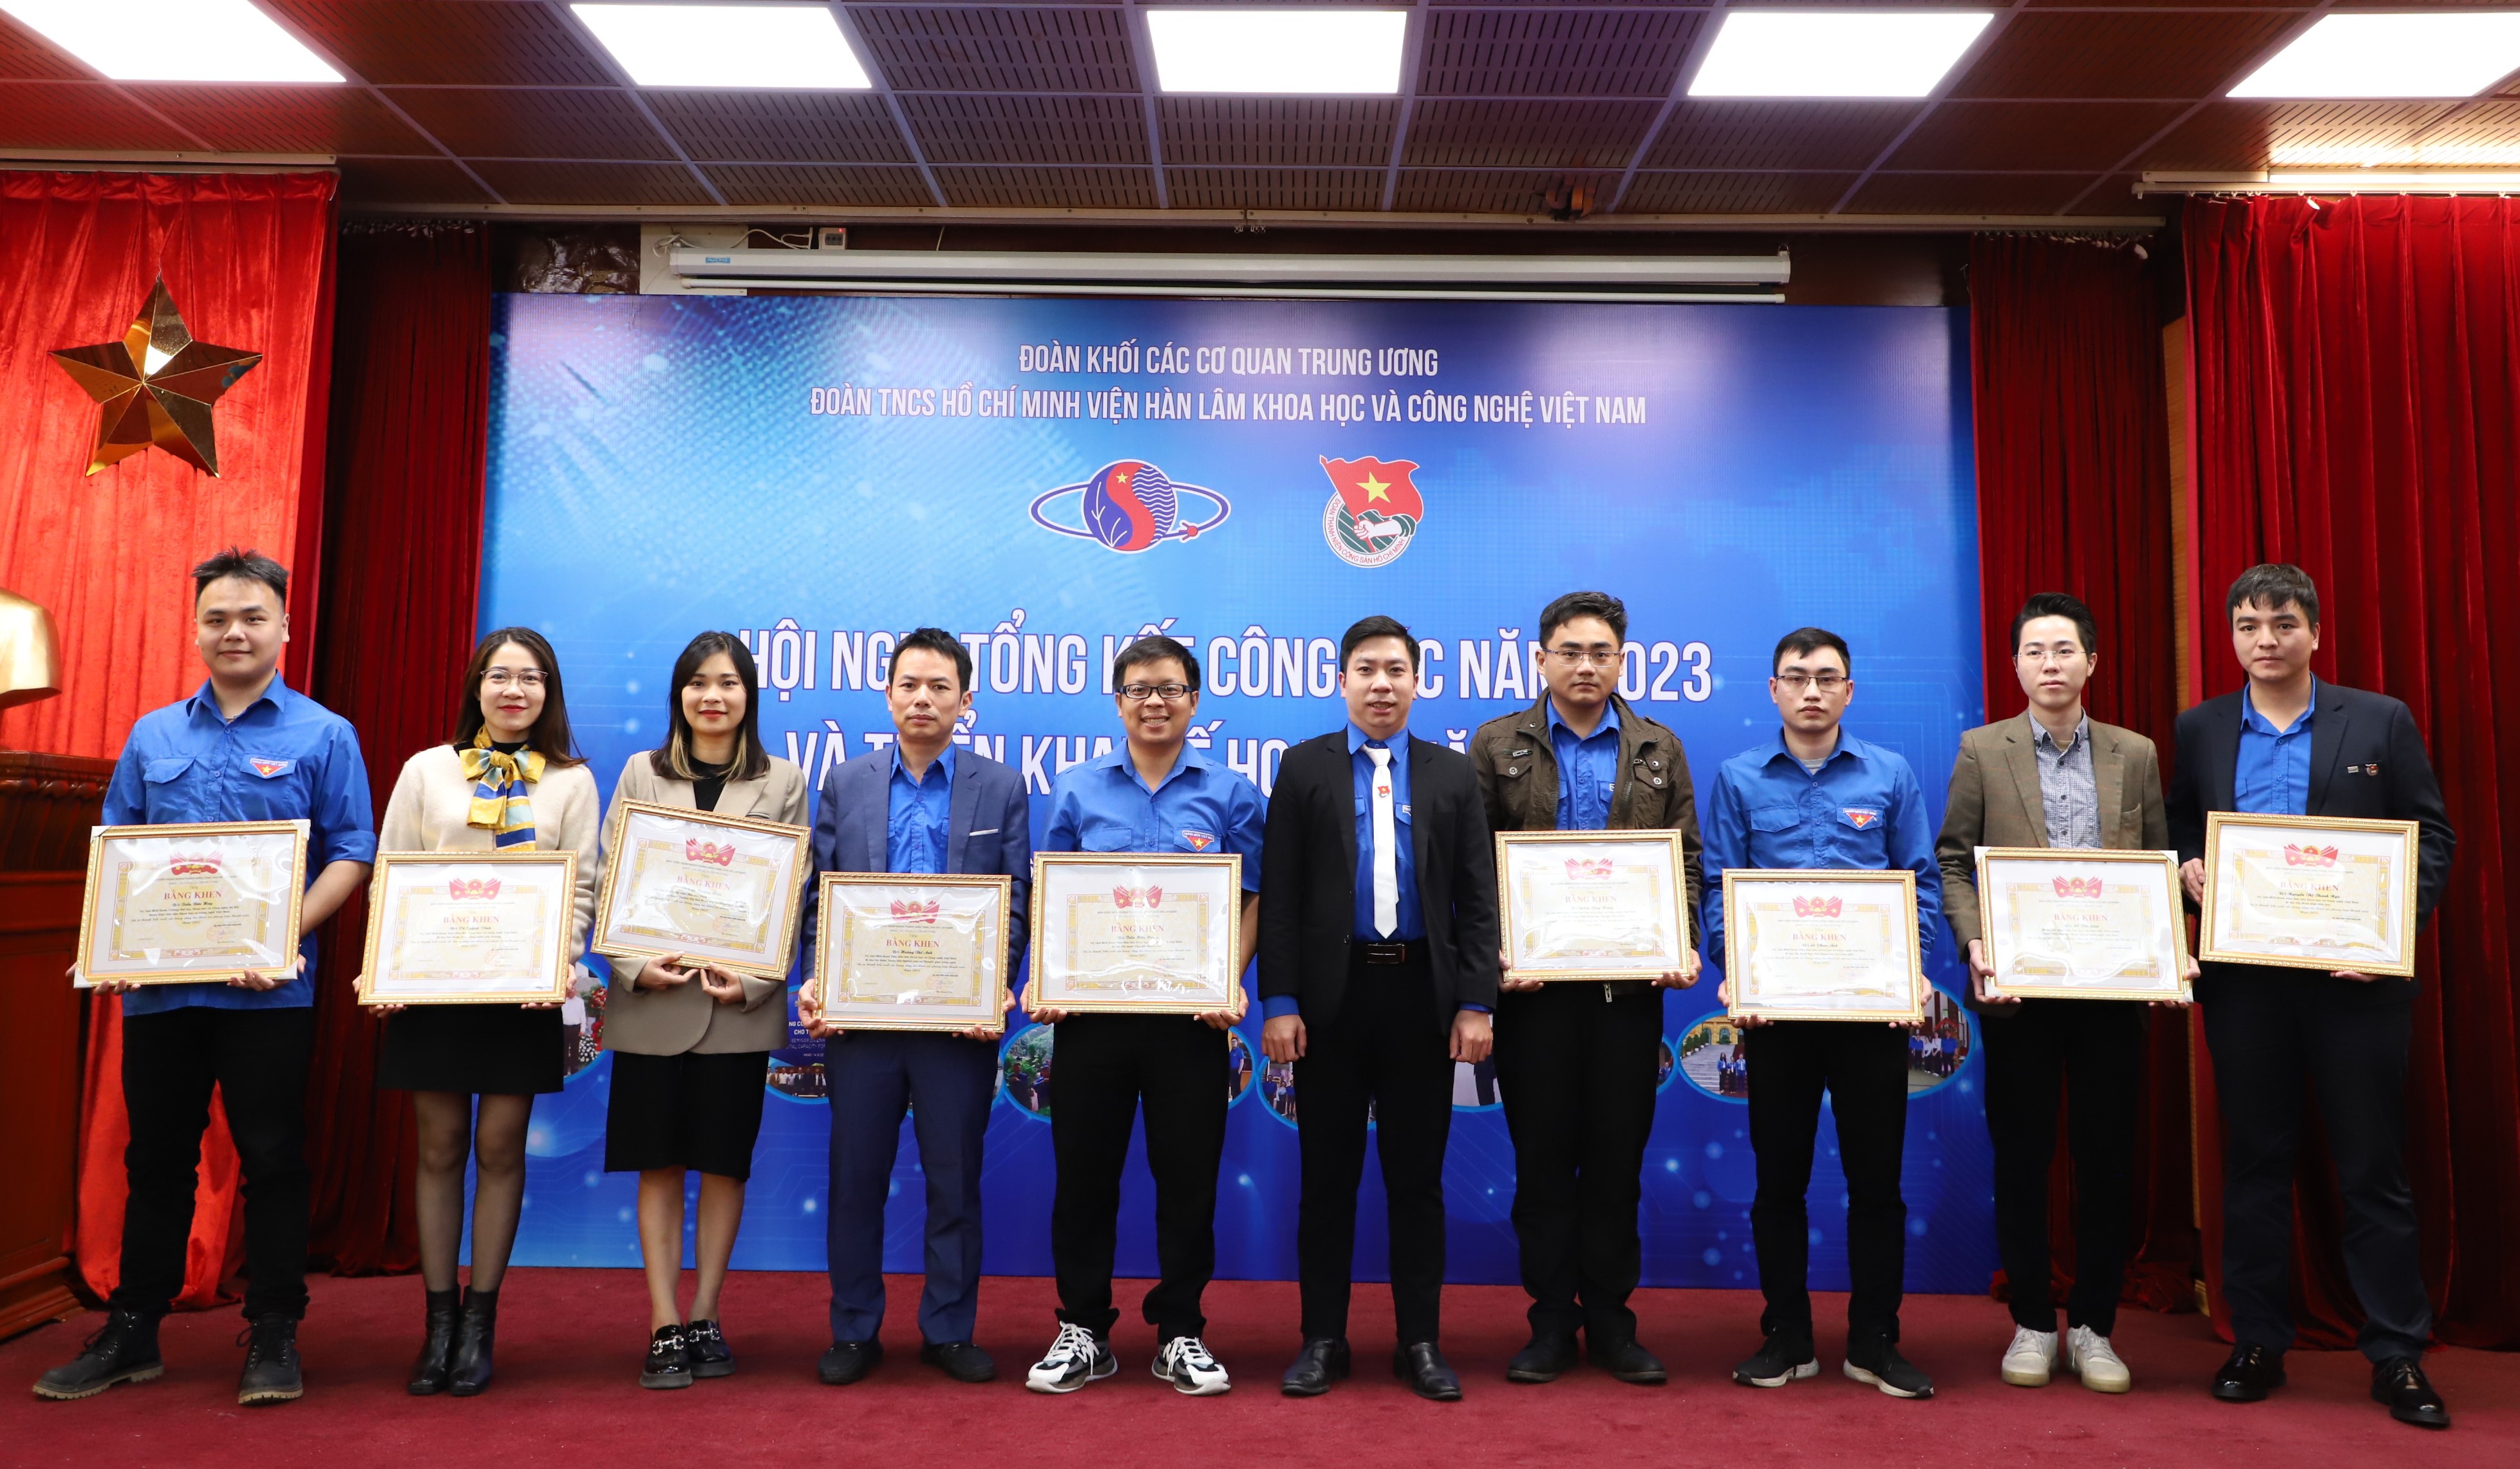 Đoàn Thanh niên Viện Hàn lâm Khoa học và Công nghệ Việt Nam tổng kết công tác năm 2023 và triển khai kế hoạch năm 2024